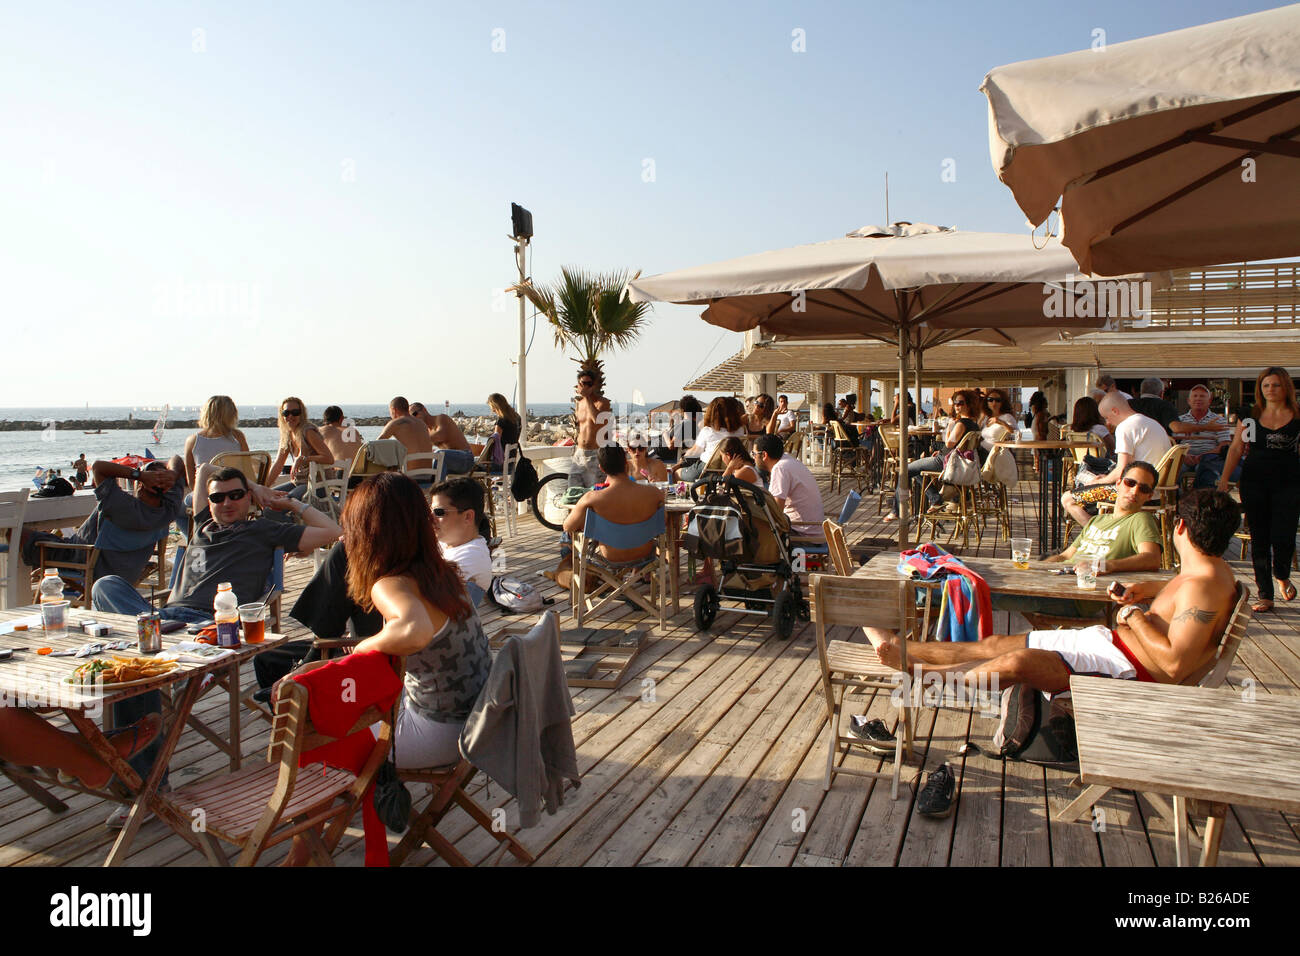 Image result for tel aviv beach restaurants images